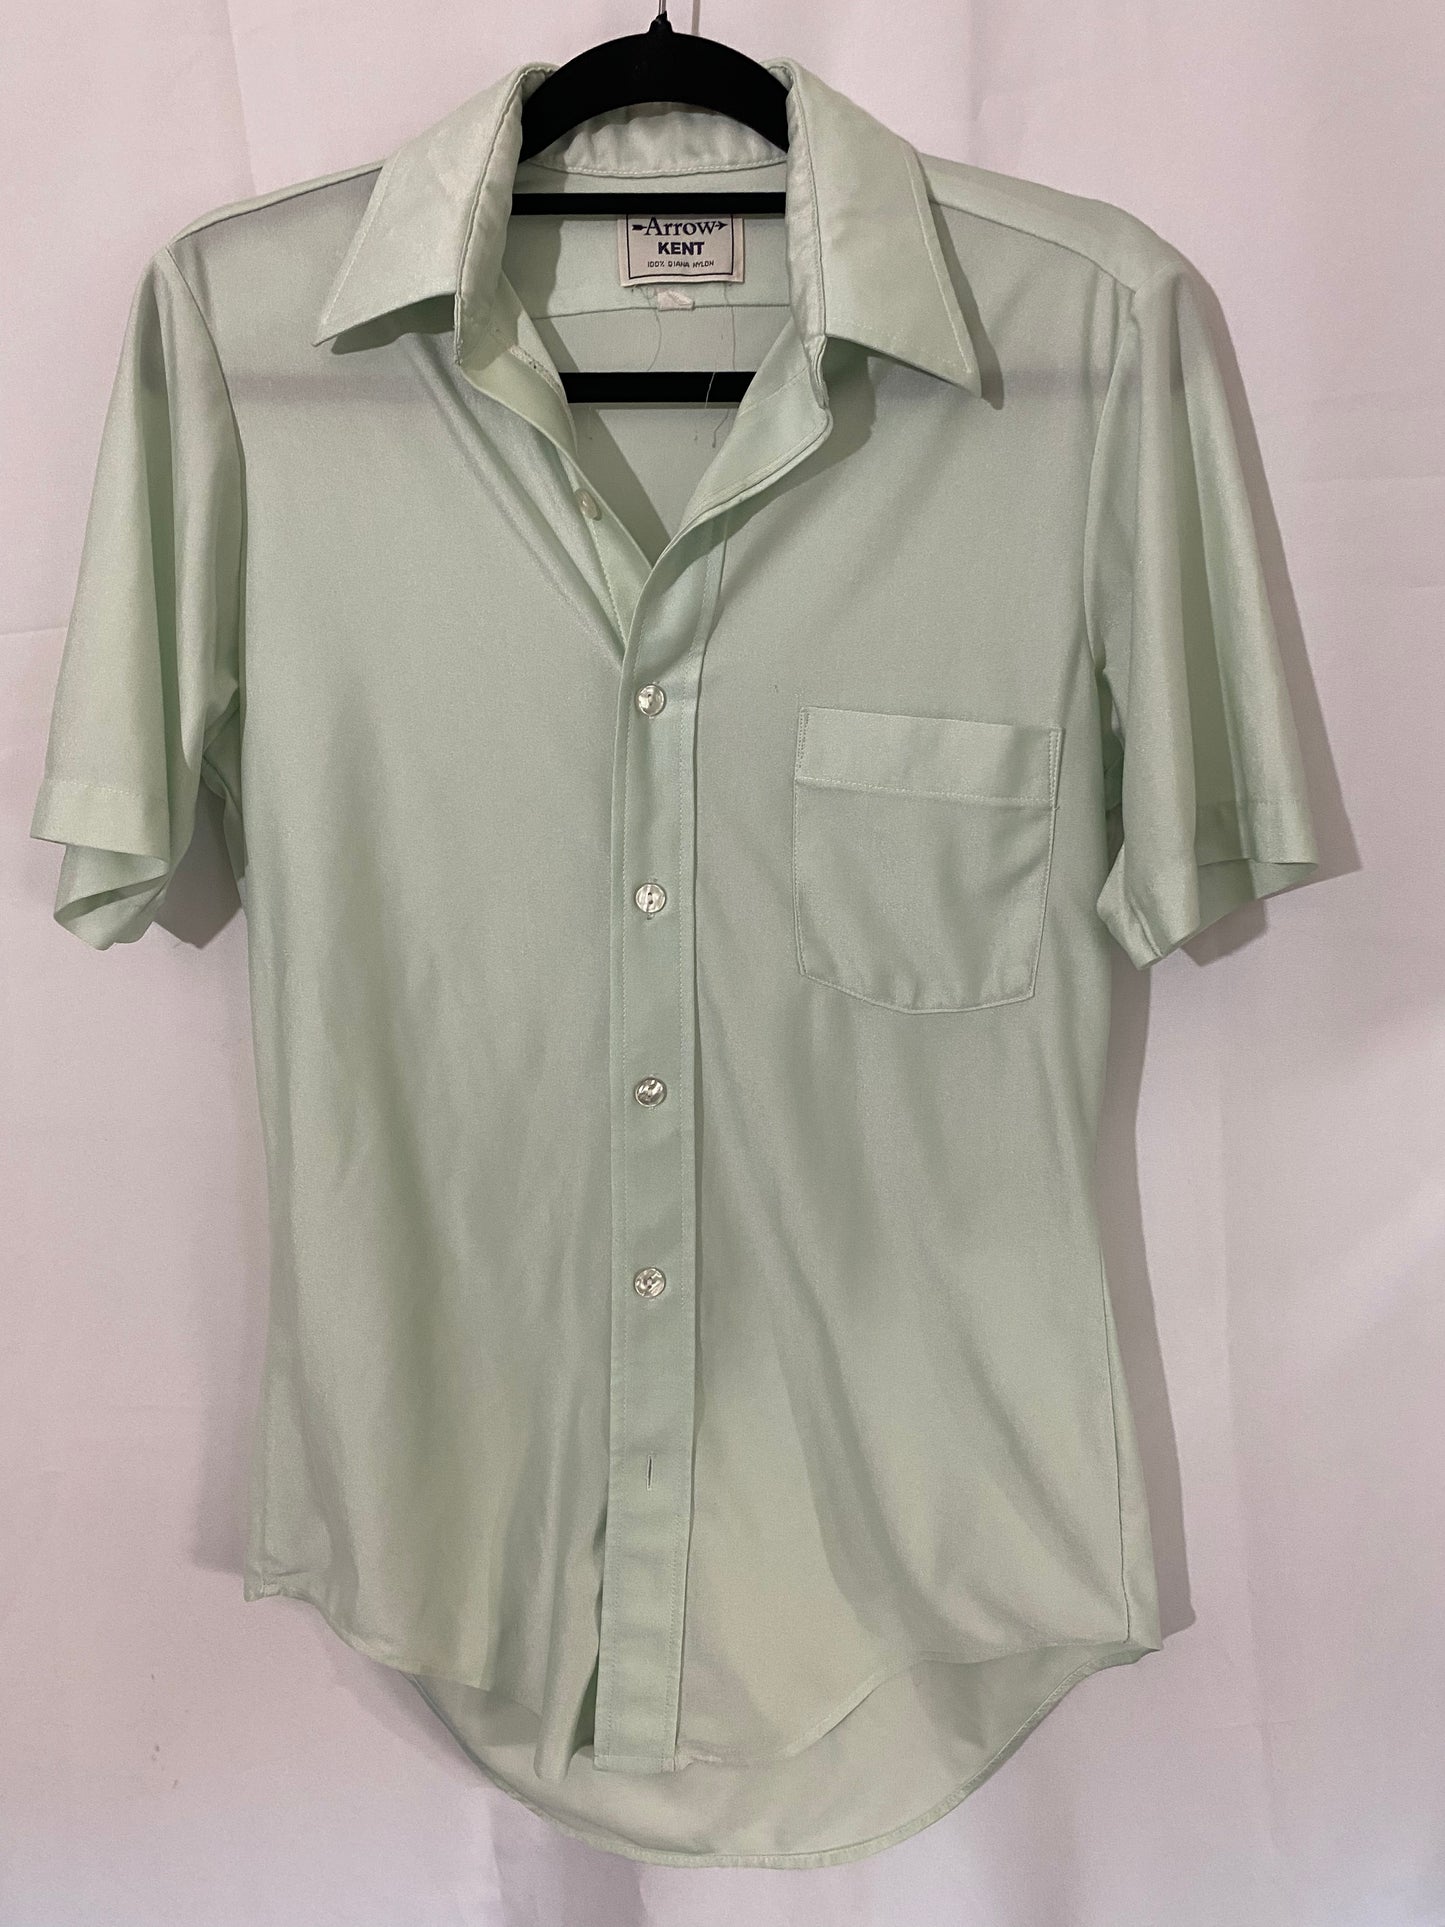 Seafoam Green Button Shirt